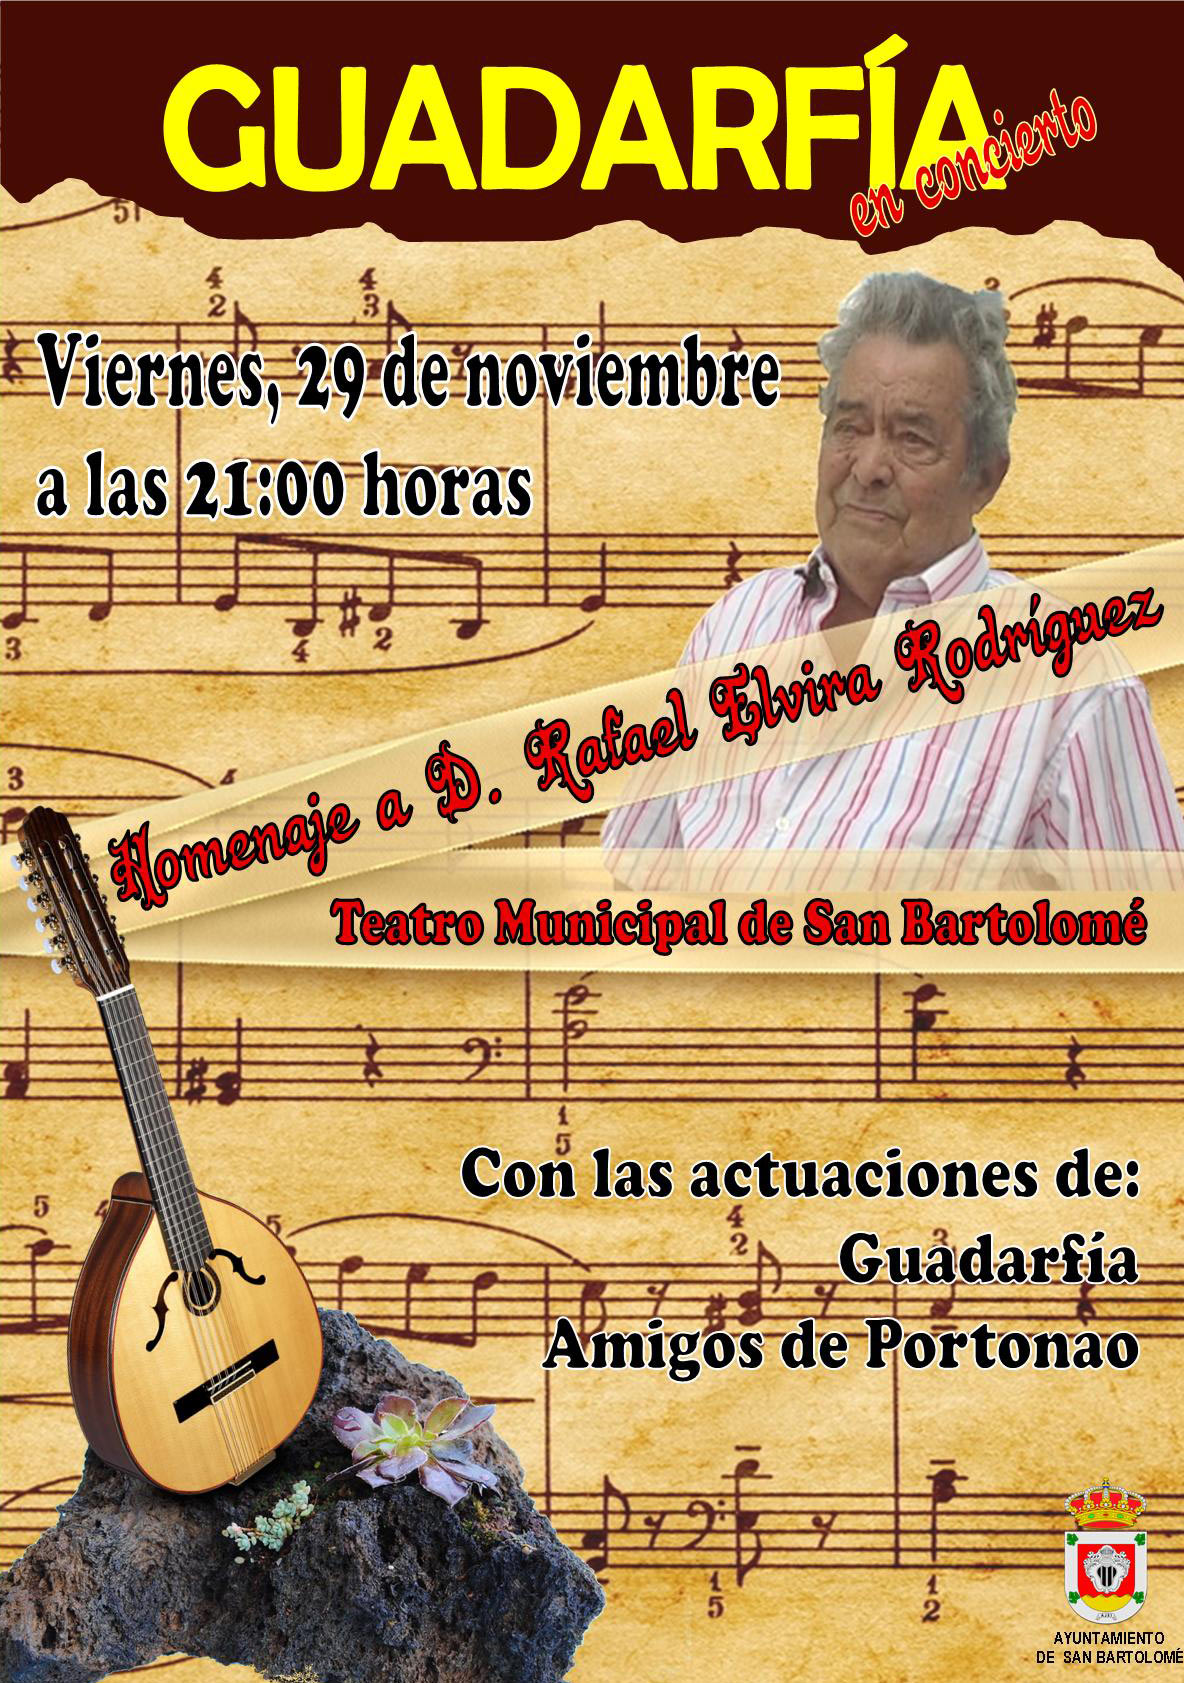 La Agrupación Folklórica Guadarfía rinde homenaje al cantador Rafael Elvira Rodríguez